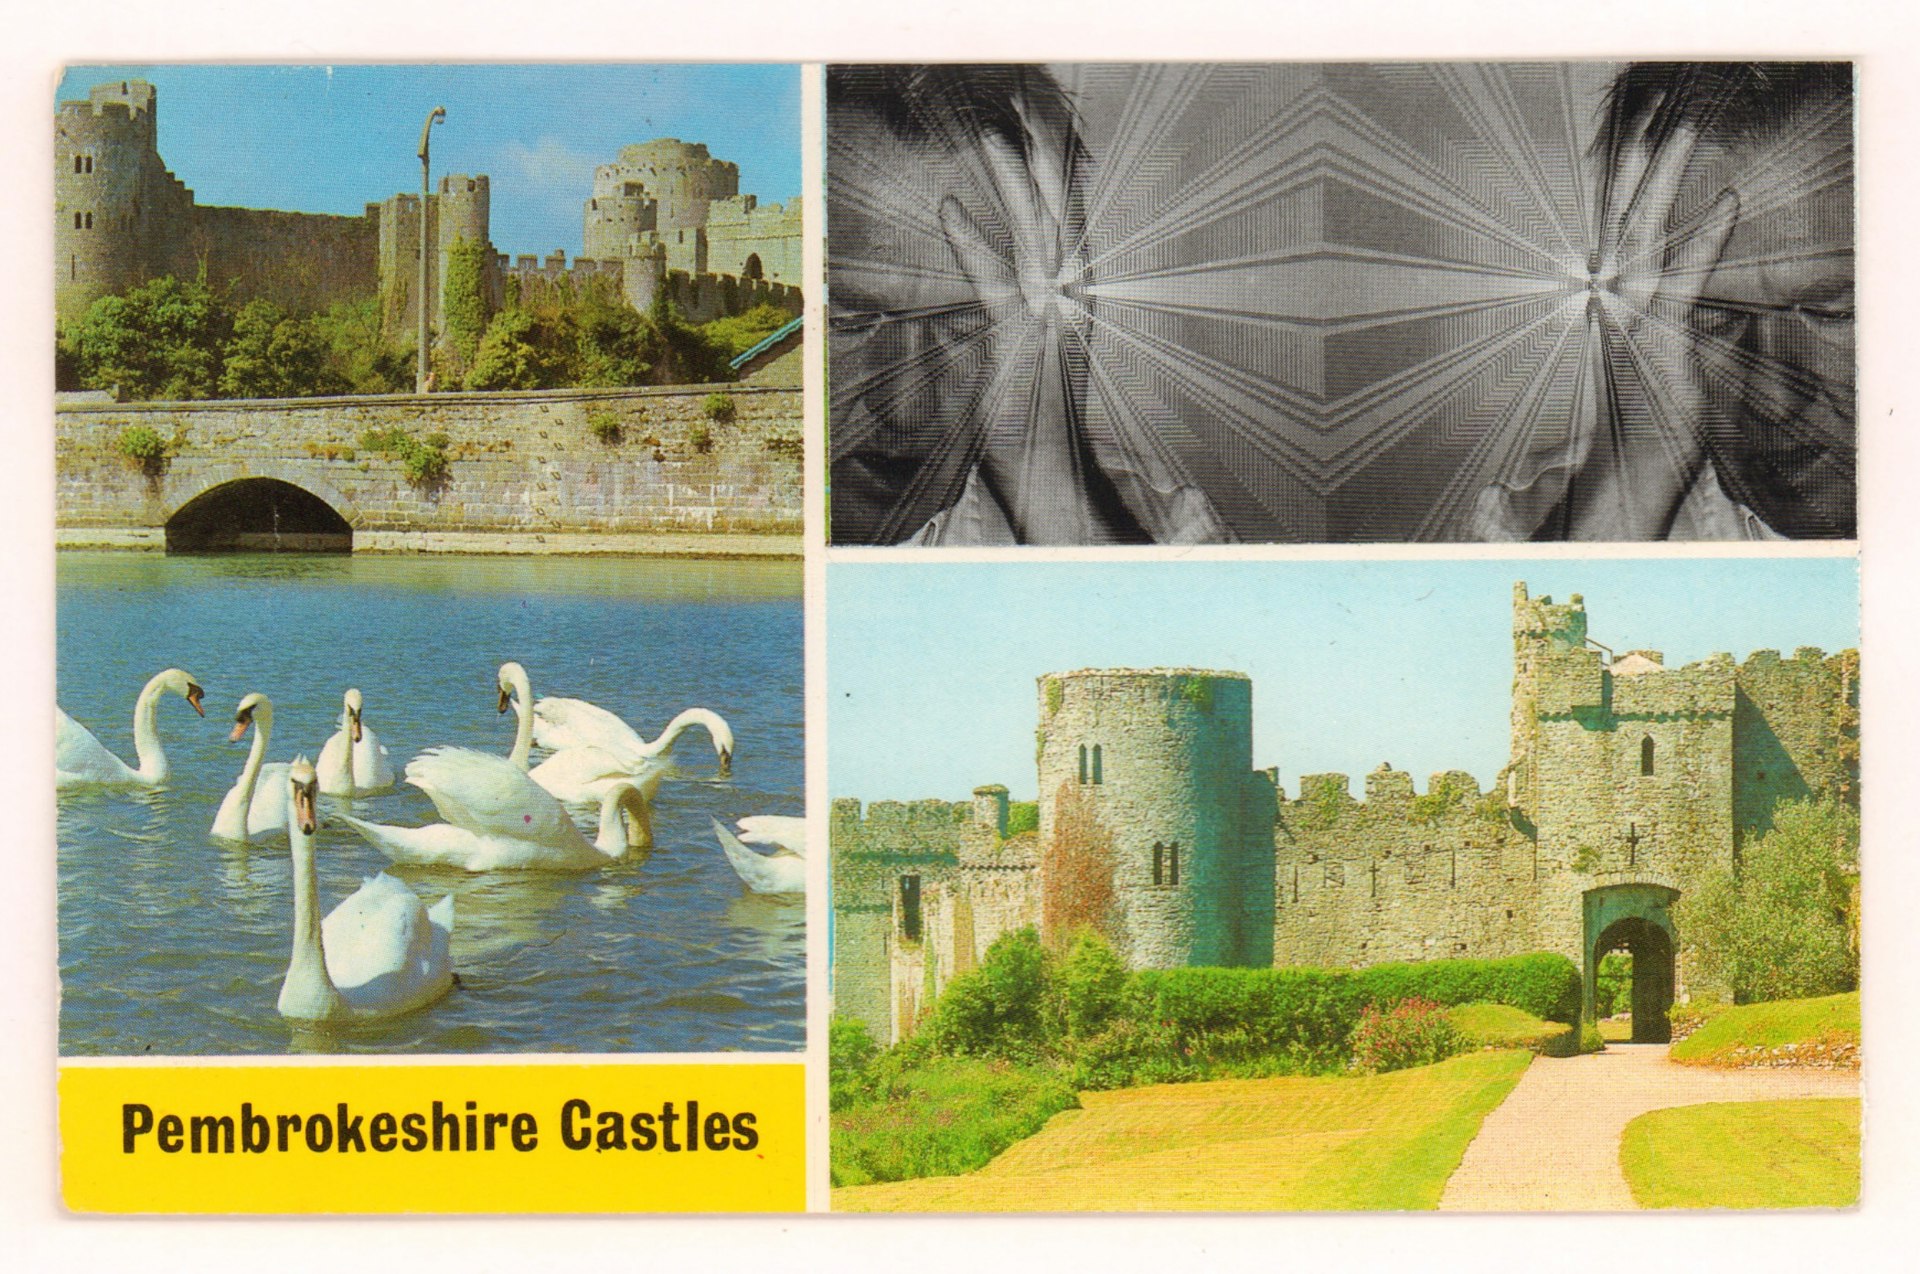 Pembrokeshire Castles